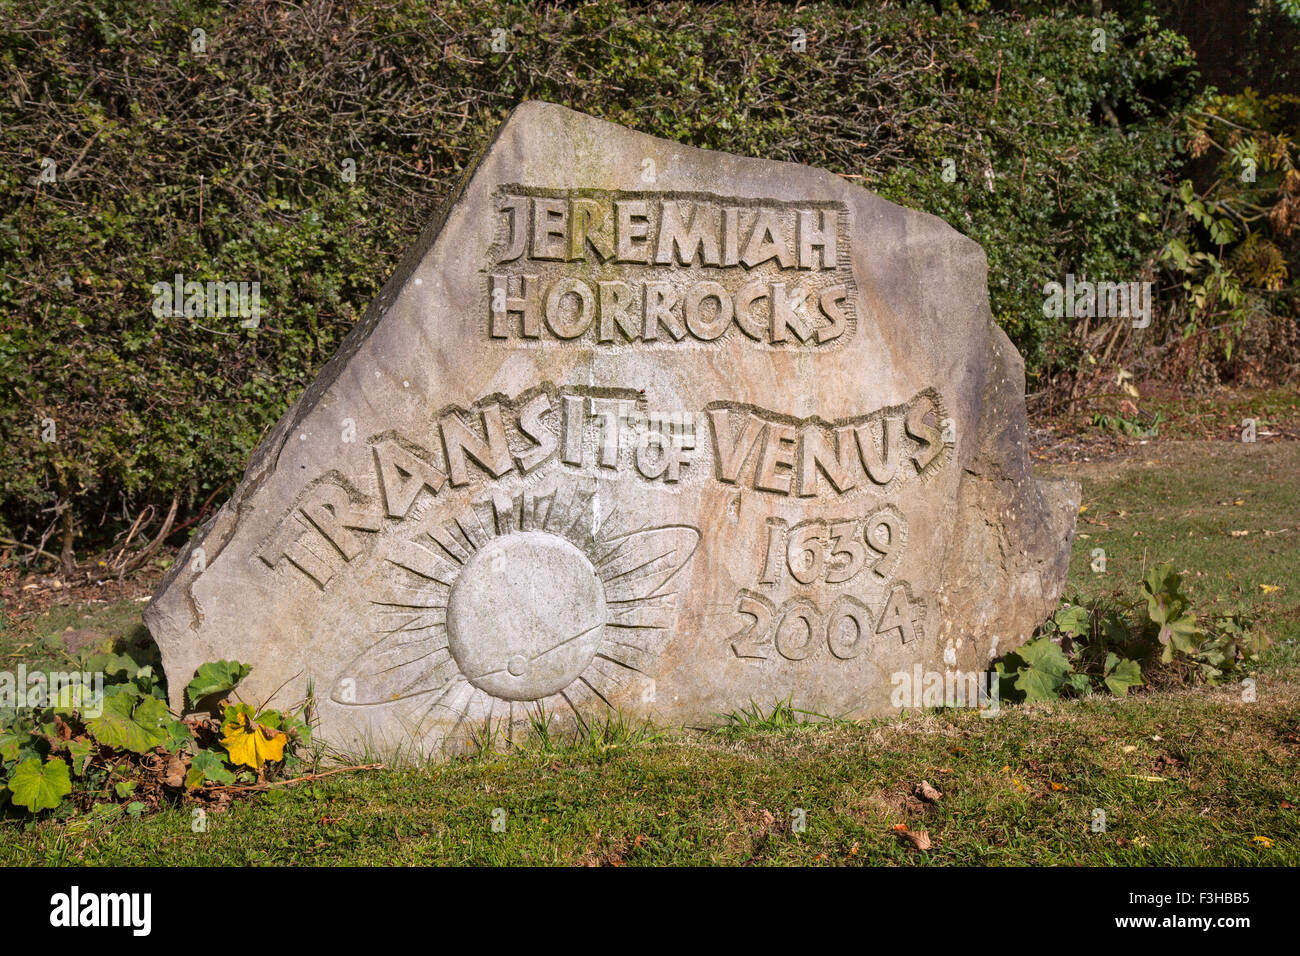 Geremia Horrocks, transito di Venere 1639 -2004 lapide a Chorley, Lancashire. Regno Unito Foto Stock